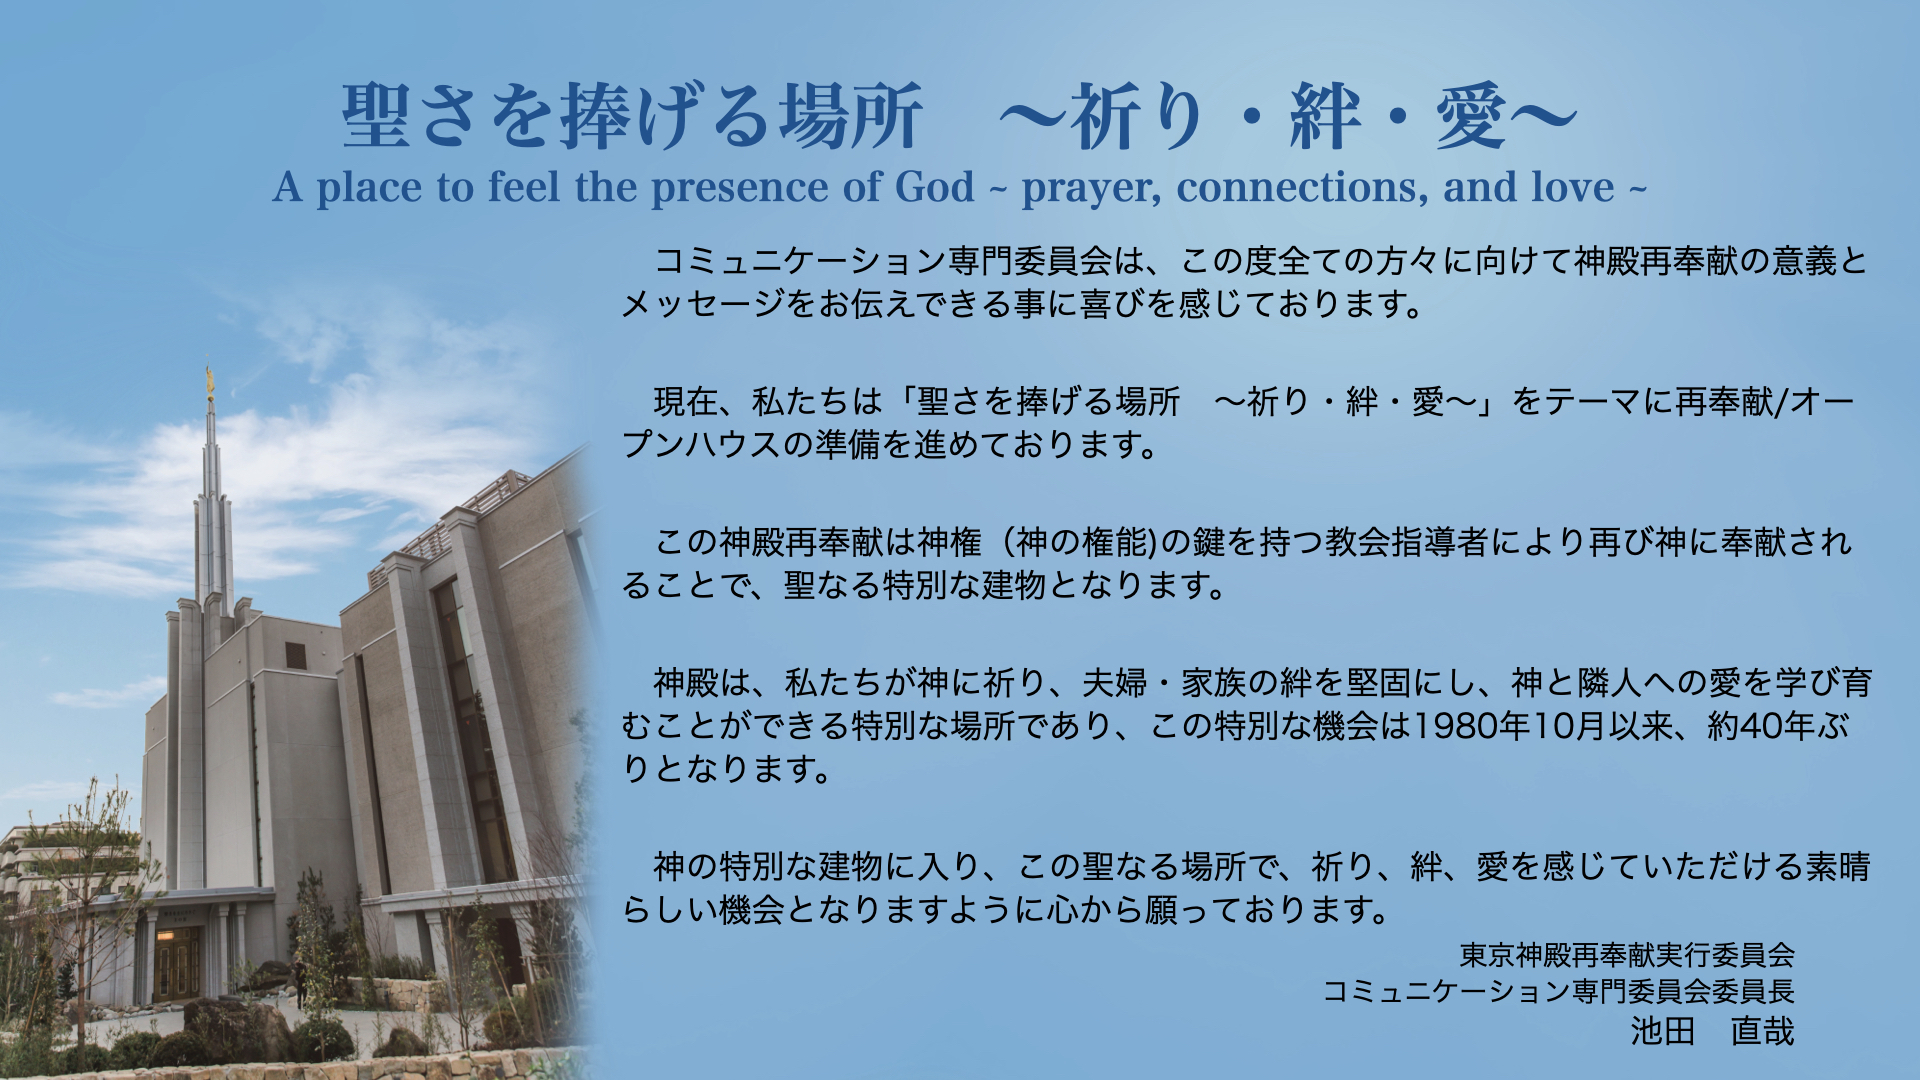 メッセージと東京神殿の画像